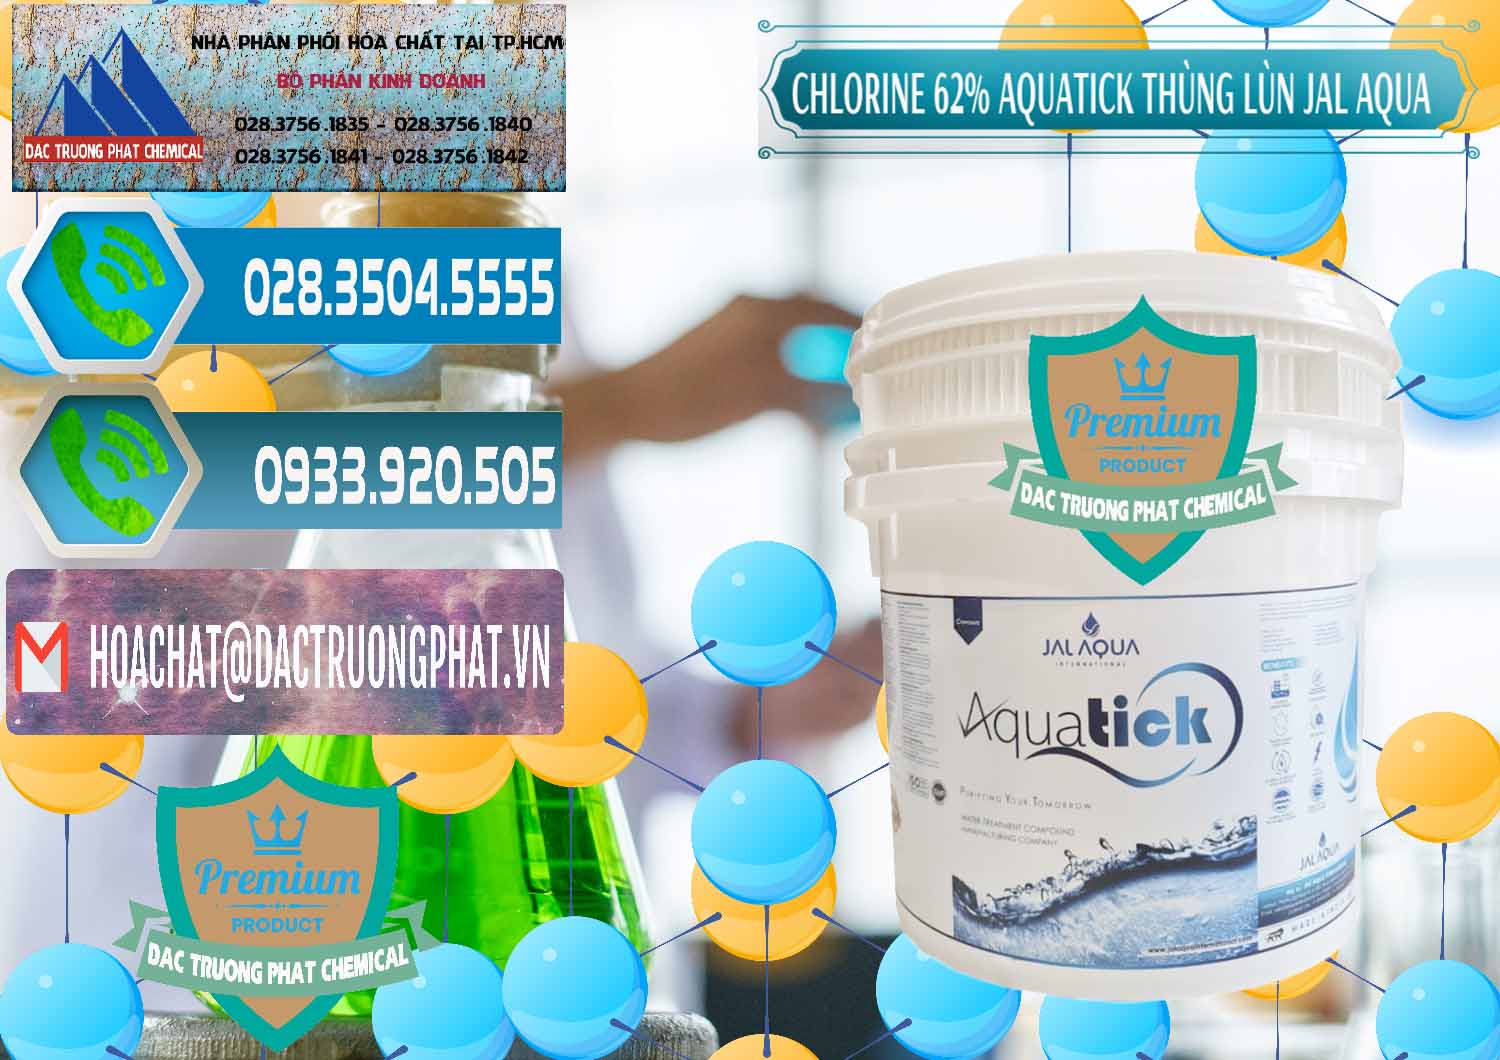 Cty chuyên cung ứng _ bán Chlorine – Clorin 62% Aquatick Thùng Lùn Jal Aqua Ấn Độ India - 0238 - Cty cung cấp ( kinh doanh ) hóa chất tại TP.HCM - congtyhoachat.net